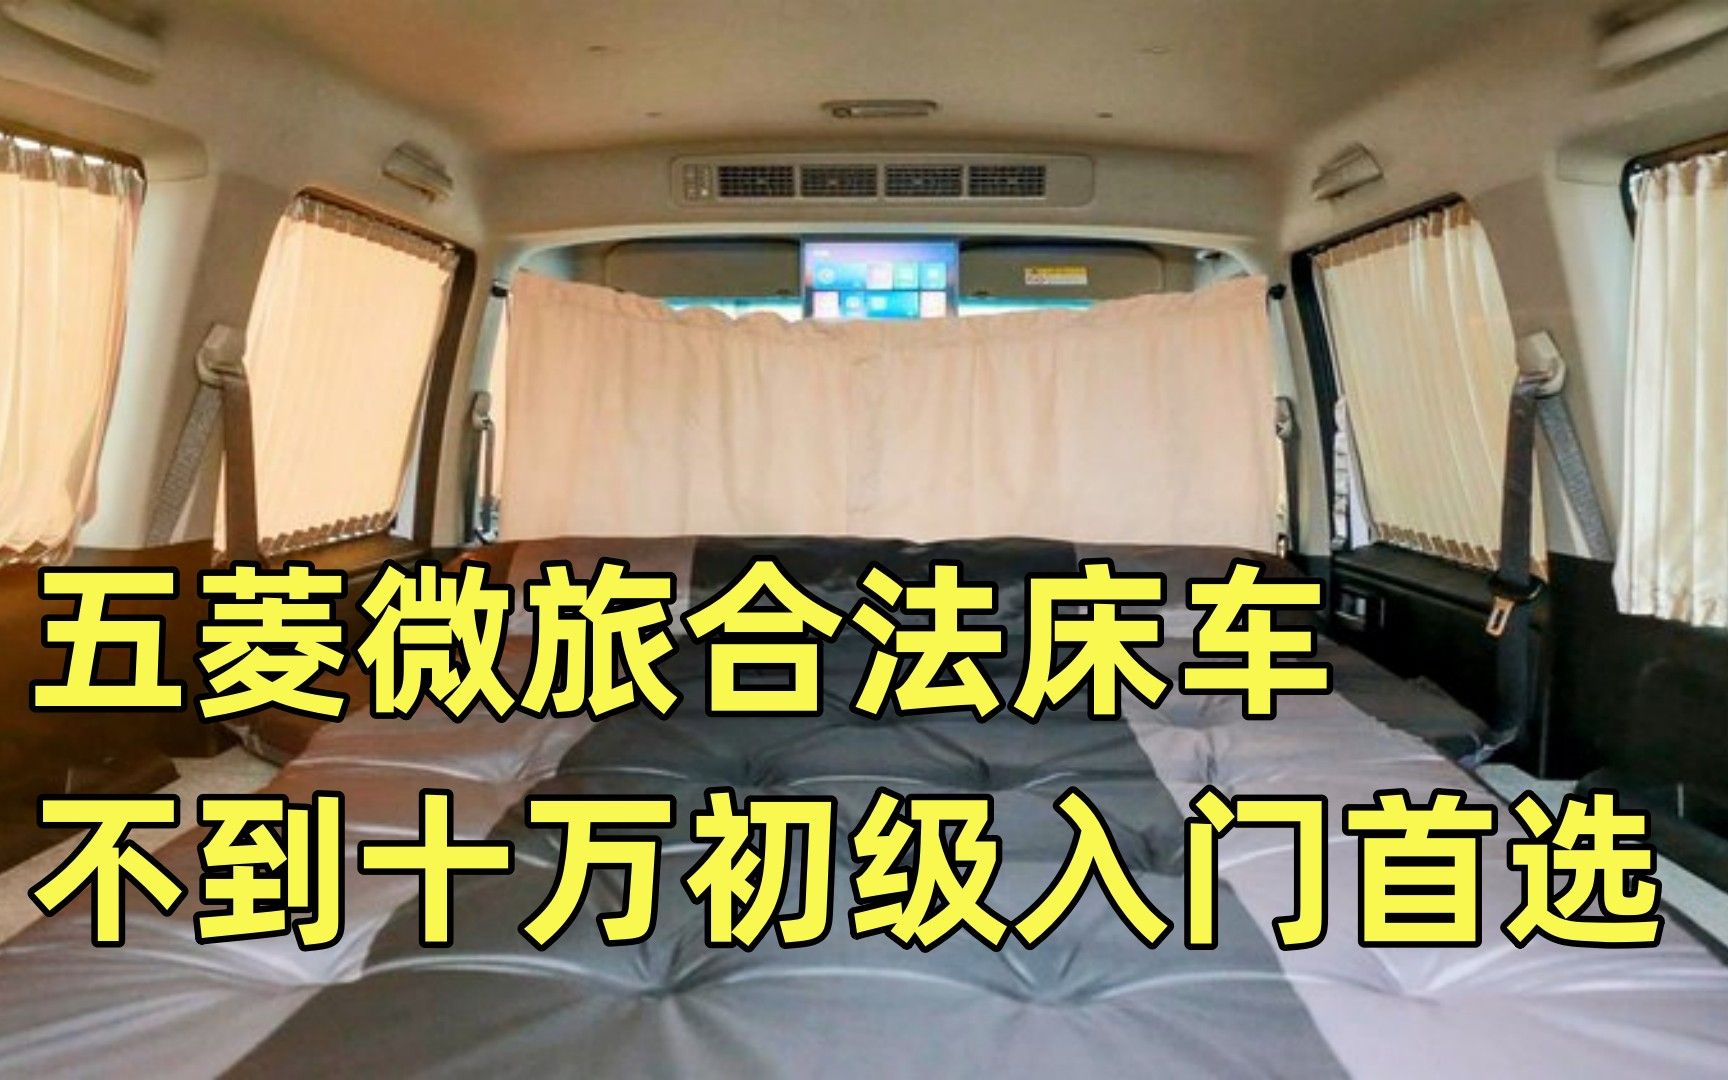 五菱微旅车内部结构图片